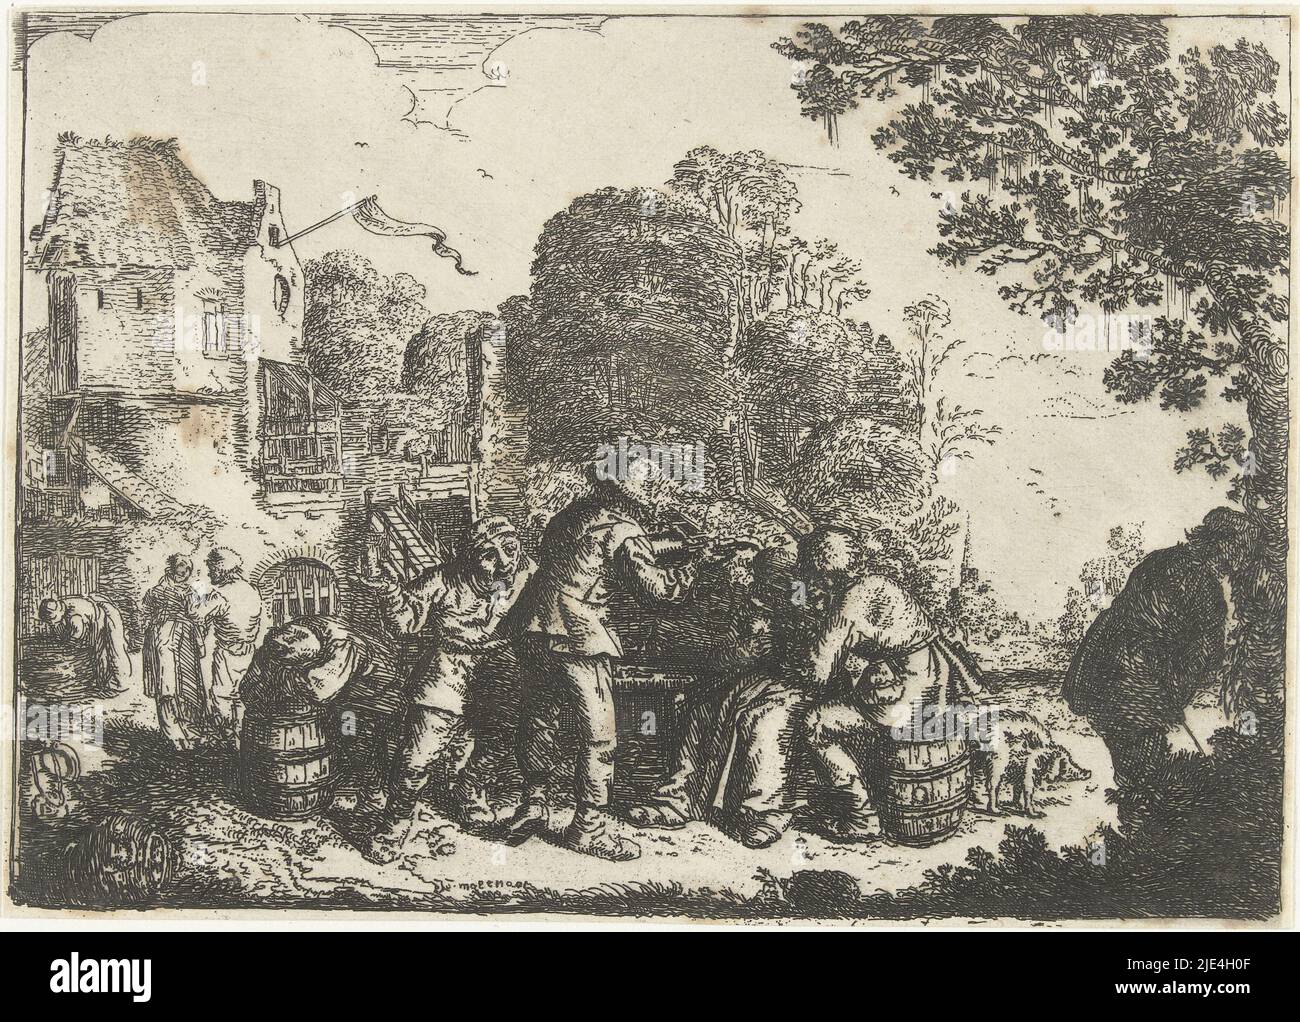 Vue du Schloss Pillnitz, Robert Sayer, d'après Meaurer, 1752, éditeur: Robert Sayer, (Mentionné sur l'objet), éditeur: Henry Overton (II), (mentionné sur l'objet), imprimeur: Stevens, (mentionné sur l'objet), Londres, 10-avr-1752, papier, gravure, pinceau, h 262 mm × l 402 mm Banque D'Images